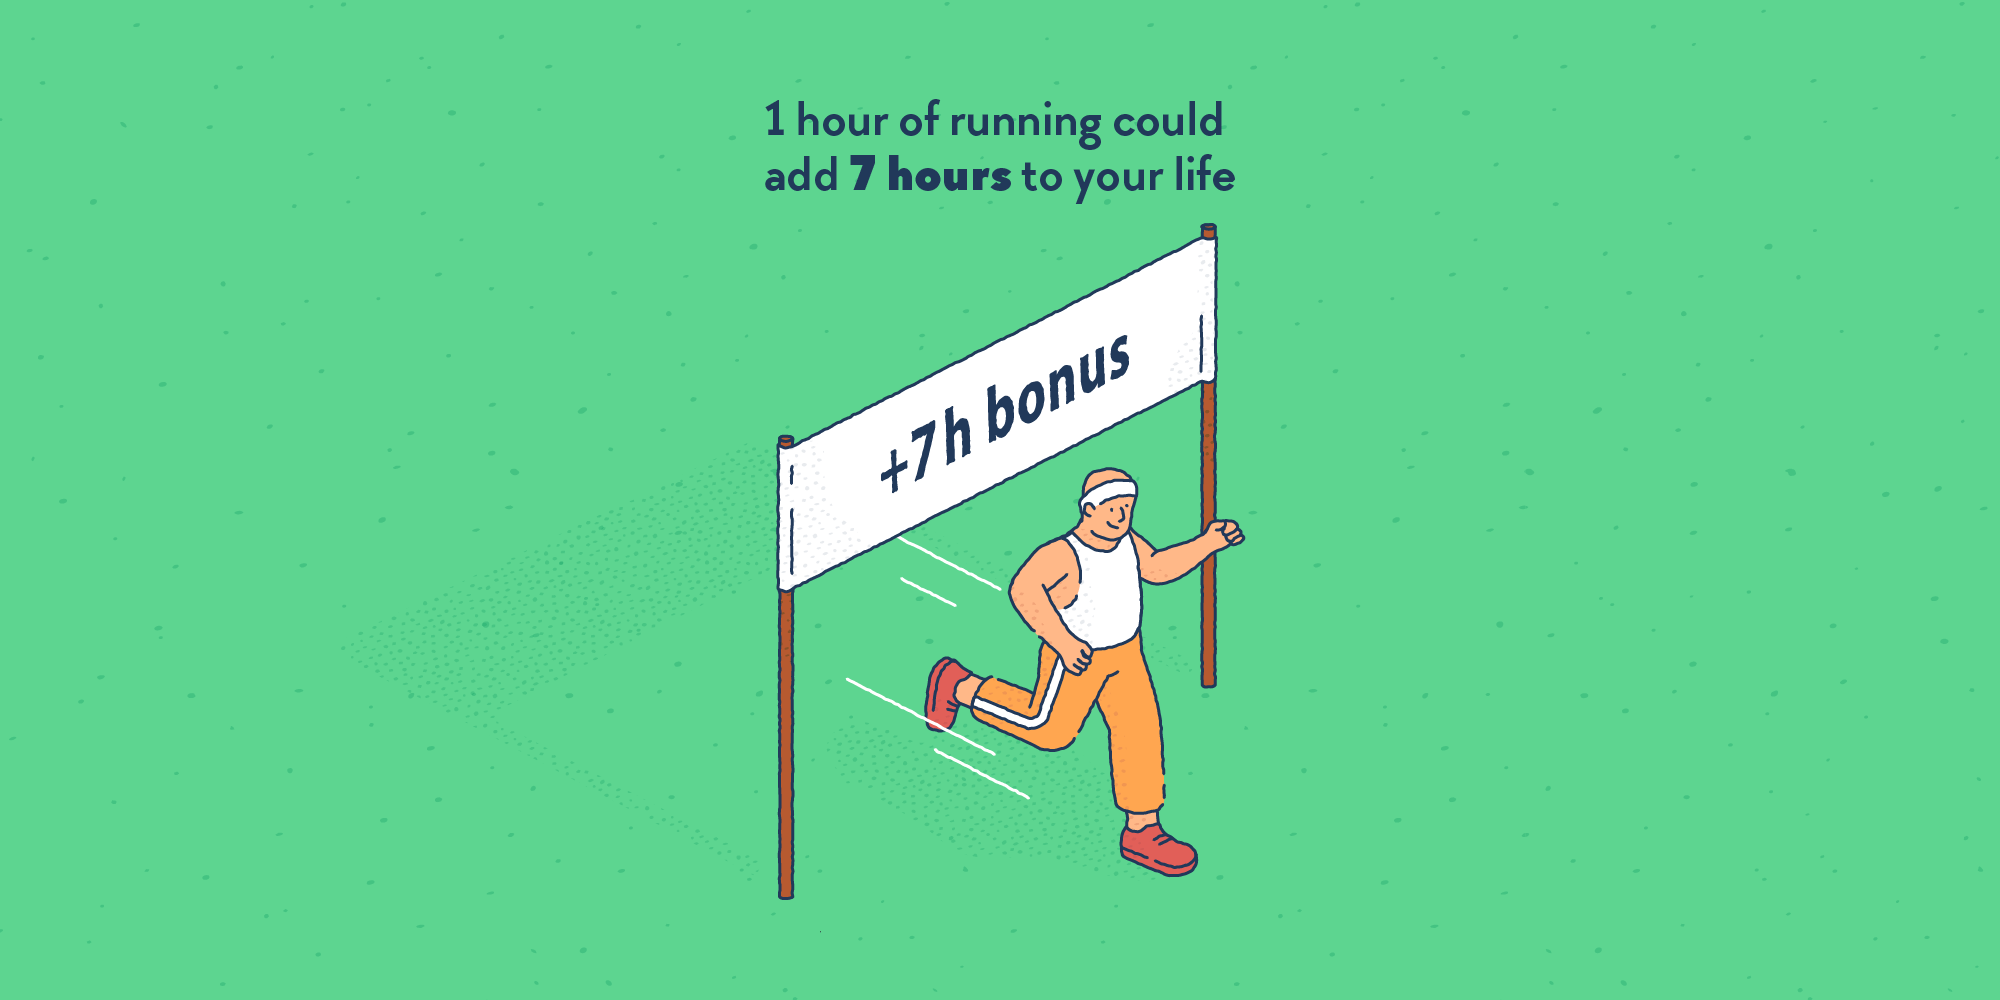 A runner crossing a banner reading: “+ 7 hours bonus”.